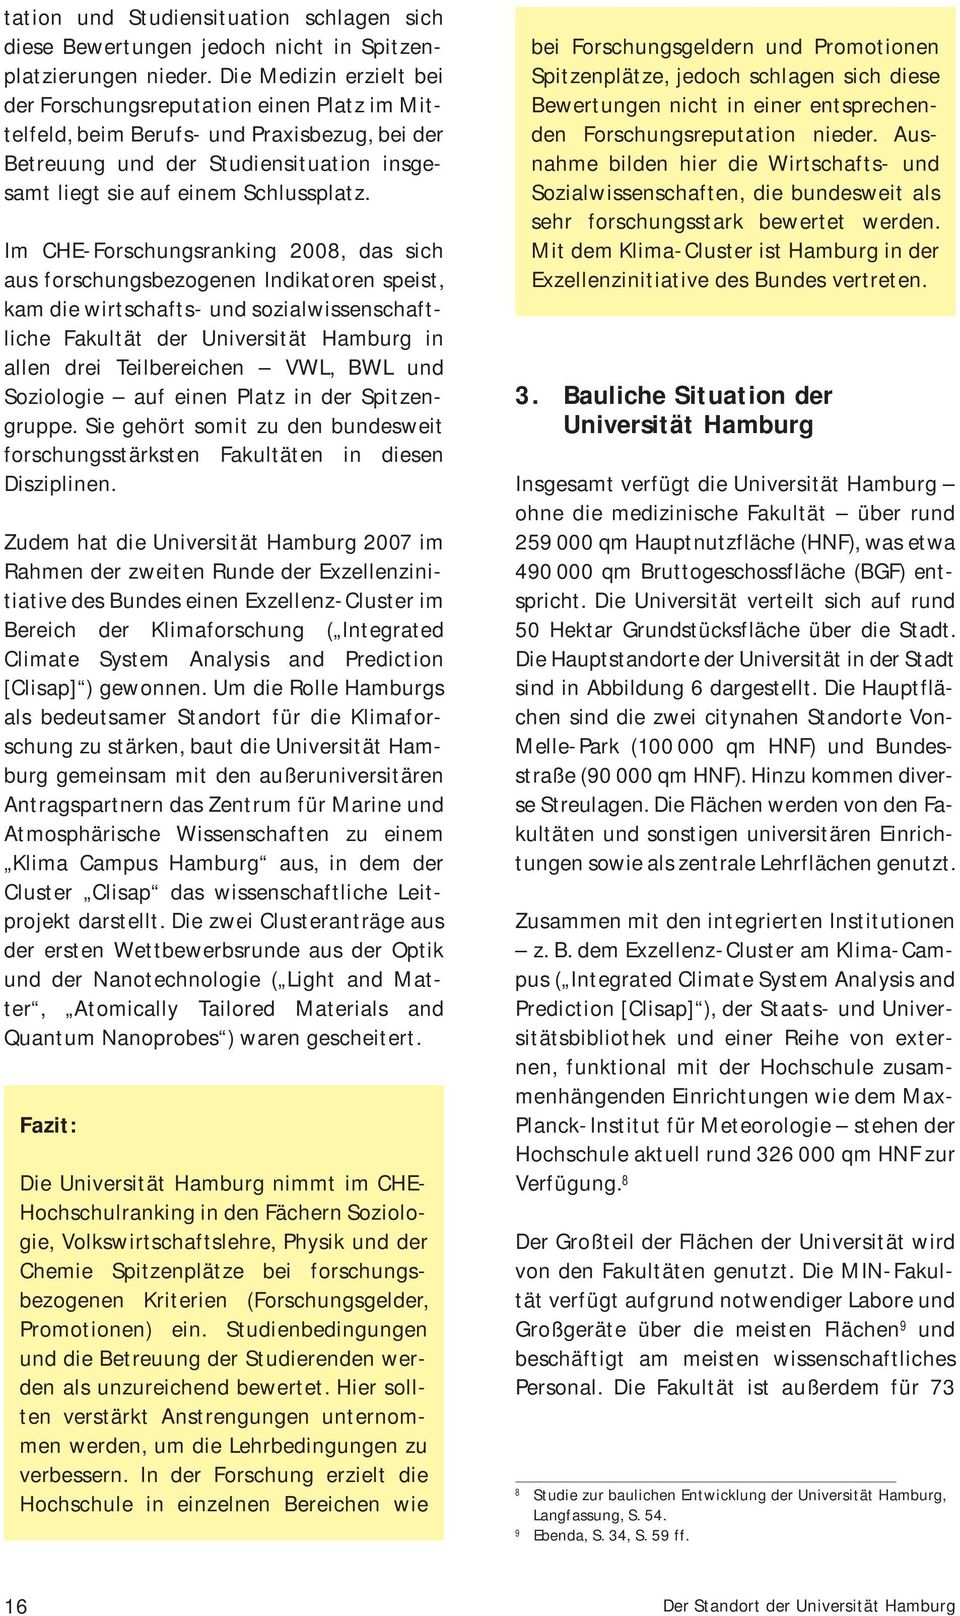 Im CHE-Forschungsranking 2008, das sich aus forschungsbezogenen Indikatoren speist, kam die wirtschafts- und sozialwissenschaftliche Fakultät der Universität Hamburg in allen drei Teilbereichen VWL,